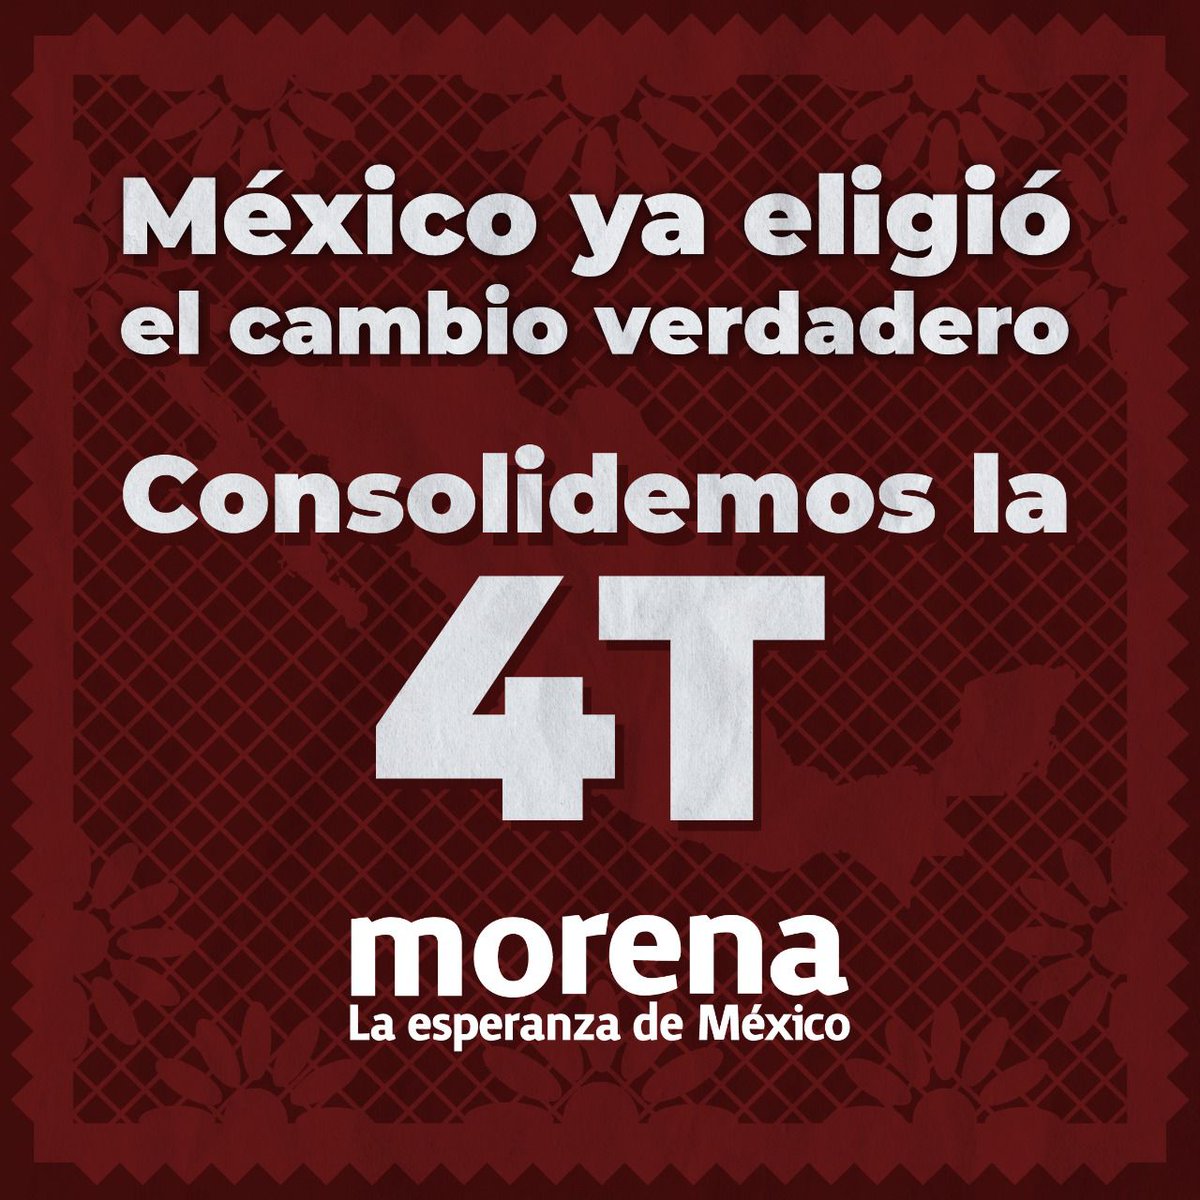 ⚠️AVISO IMPORTANTE ⚠️ En México no existe oposición. Existe si, un reducido grupo delincuencial que son ENEMIGOS de México, de su pueblo y del avance del país. Éste 6 de junio #VotaTodoMorena Éste 6 de junio todos vamos con el #VotoMasivoPorMorena2021 en apoyo al Presidente.